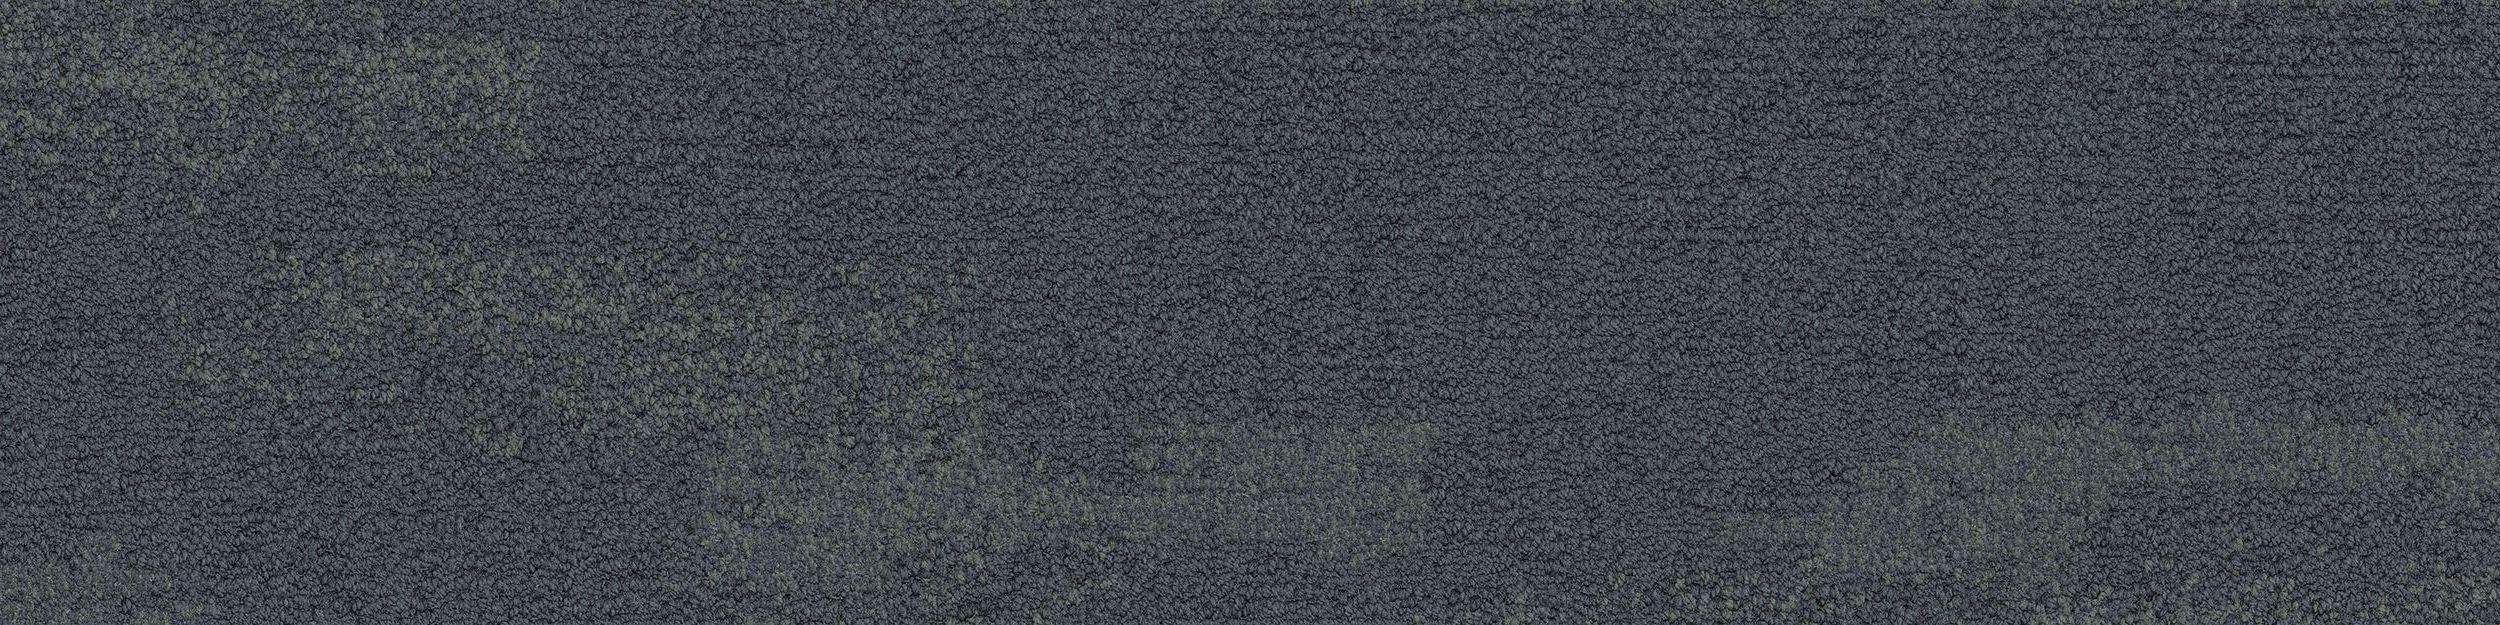 NF401 Carpet Tile In Shale imagen número 2